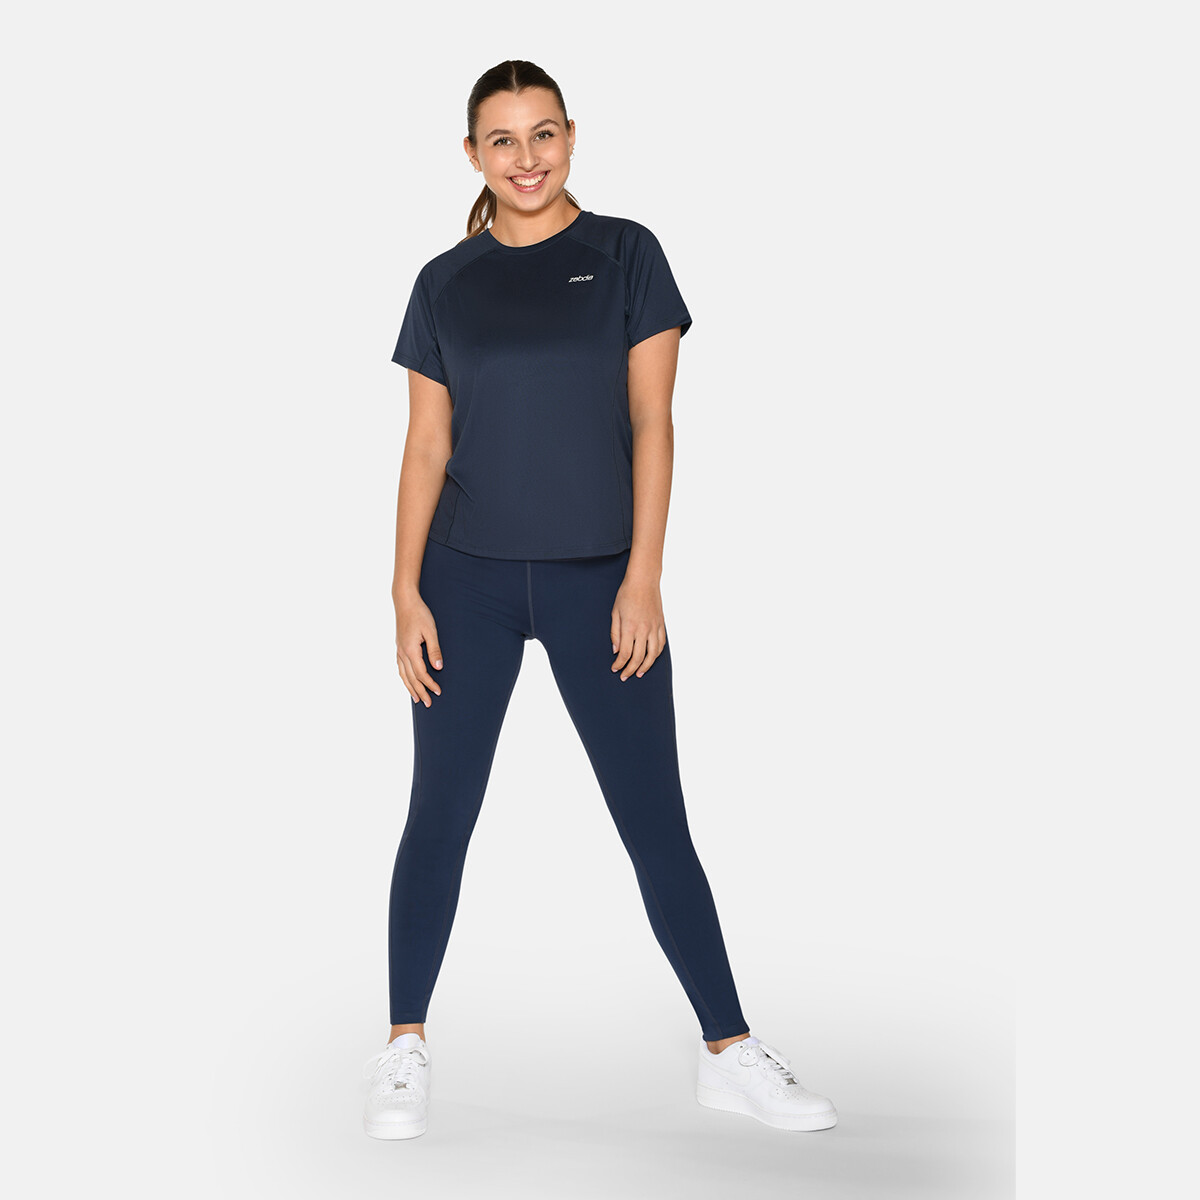 Billede af Zebdia Women Sports T-shirt, Farve: Blå, Størrelse: XL, Dame hos Netlingeri.dk